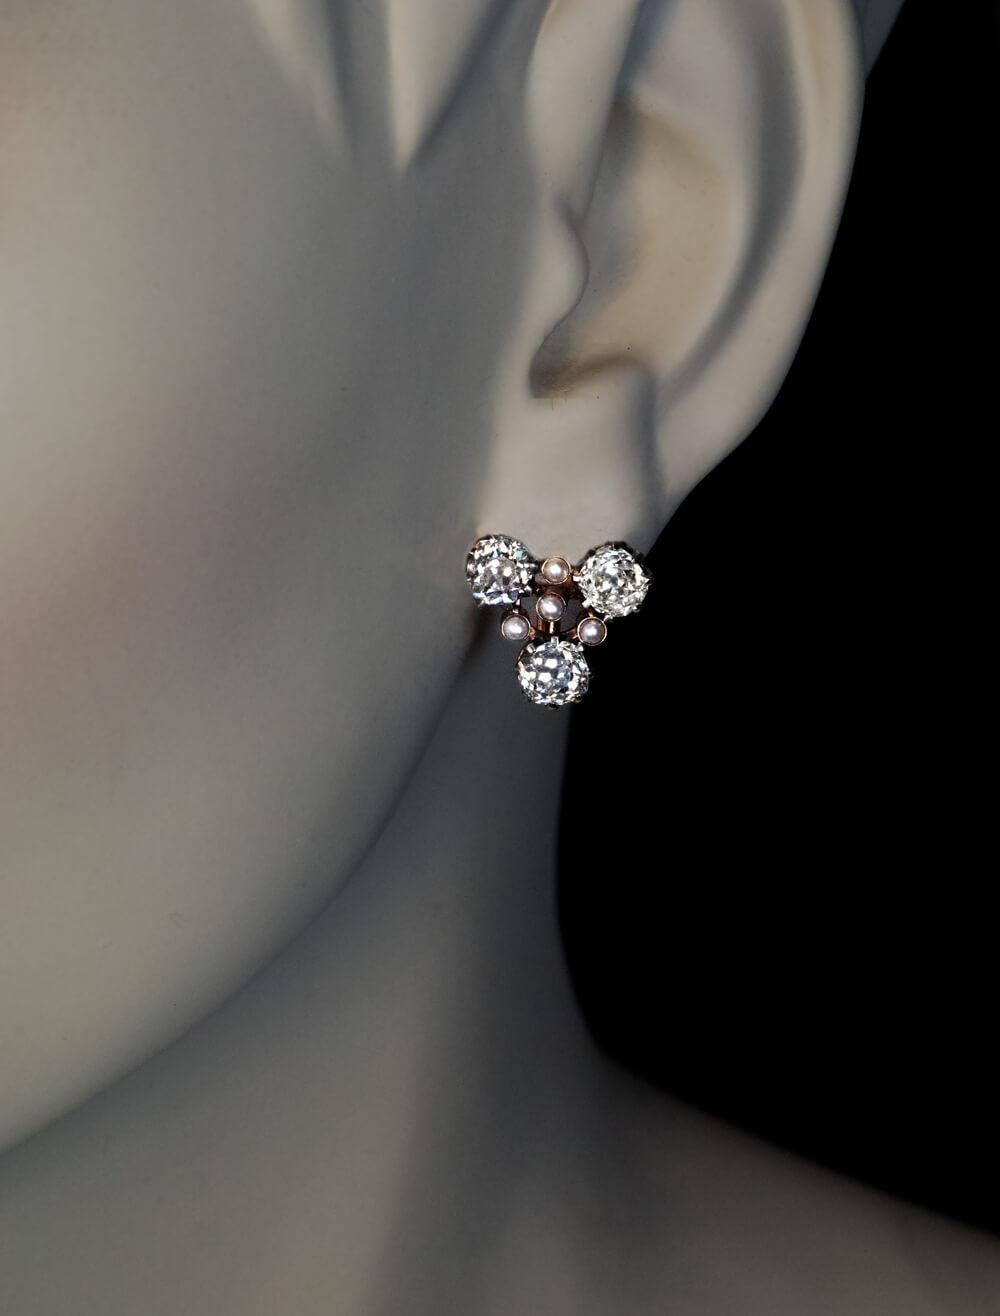 Russisch, um 1910  Die Ohrringe sind aus 14 Karat Gold und Silber gefertigt. Sie bestehen aus sechs klobigen und sehr funkelnden Diamanten im Altminenschliff (Farbe G-H-I, durchschnittliche Reinheit VS1-VS2). Die Diamanten werden von acht kleinen